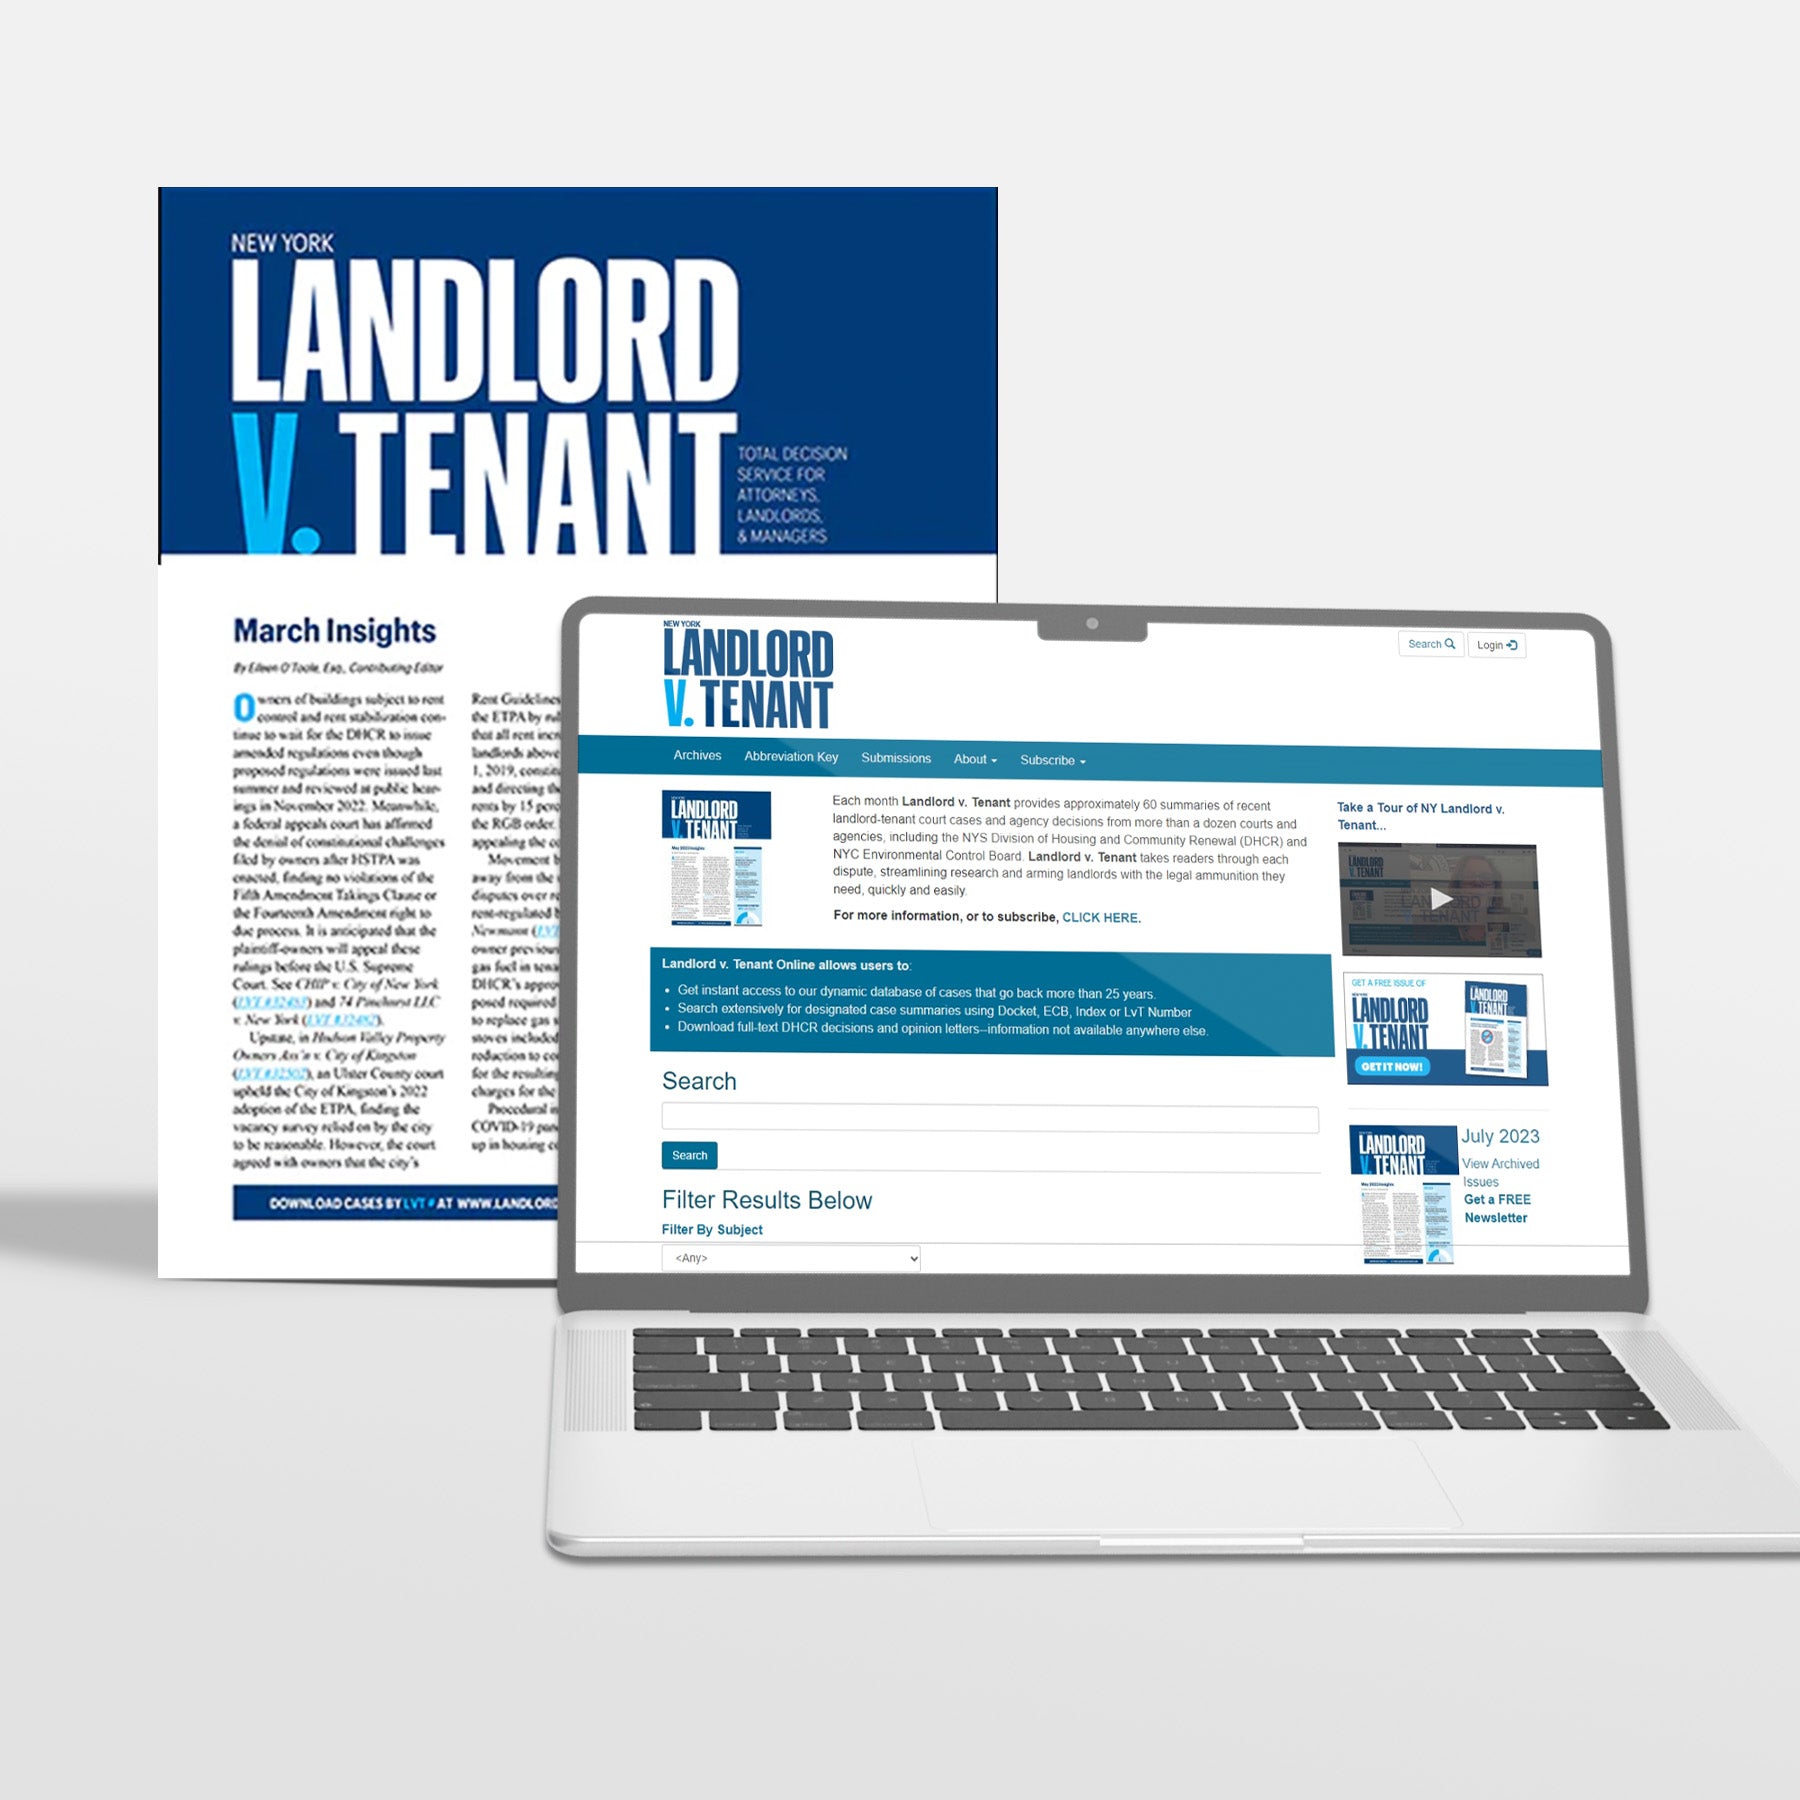 New York Landlord v. Tenant (Premium Service: Database + Newsletter)